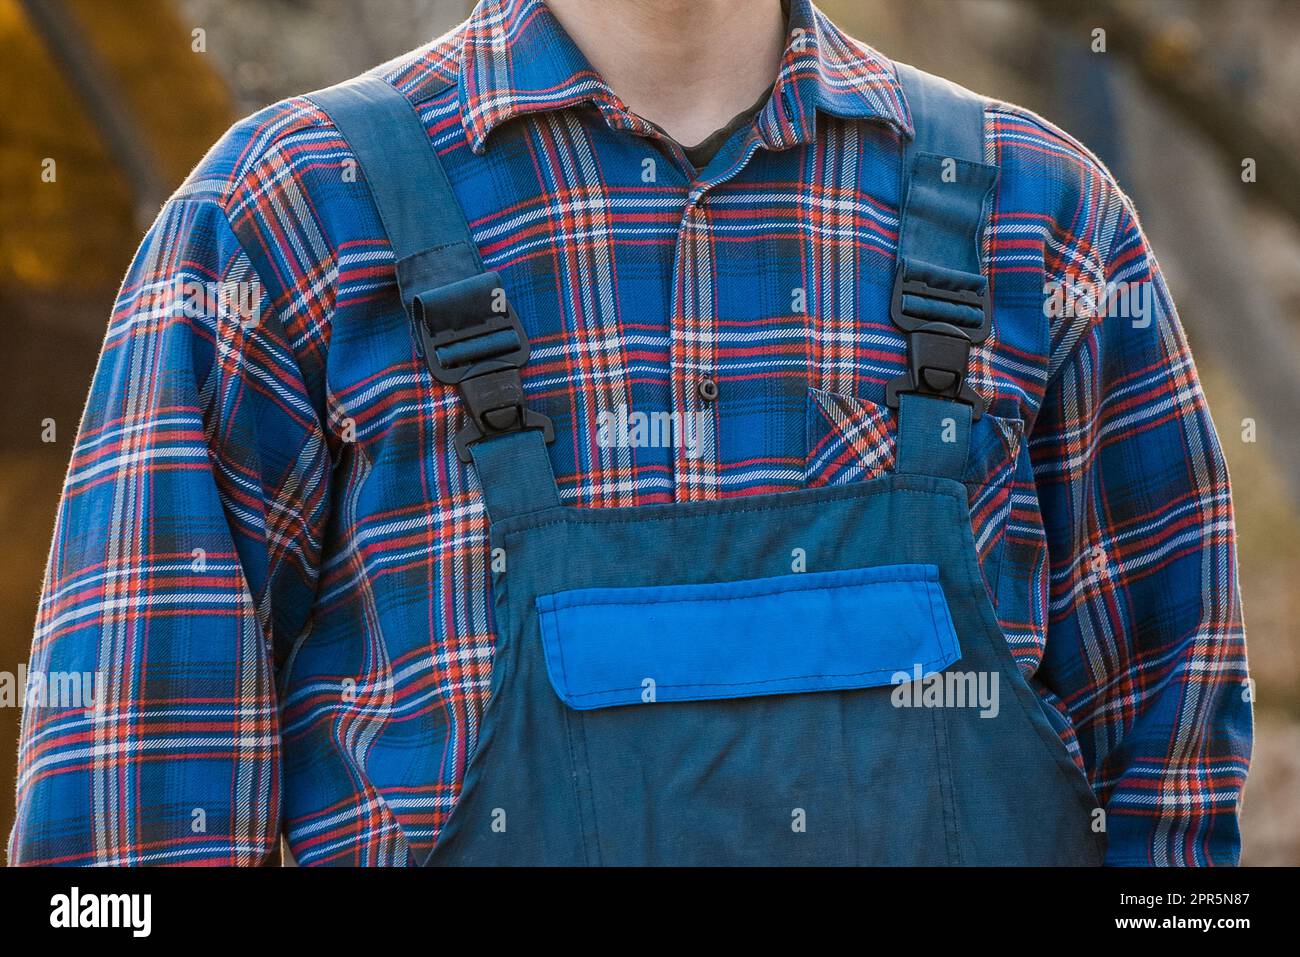 Farmer's oder Gardener's Bekleidung Erscheinungsbild Fashion Blue Hemd gemustert Karierte Jumpsuit Overalls. Stockfoto